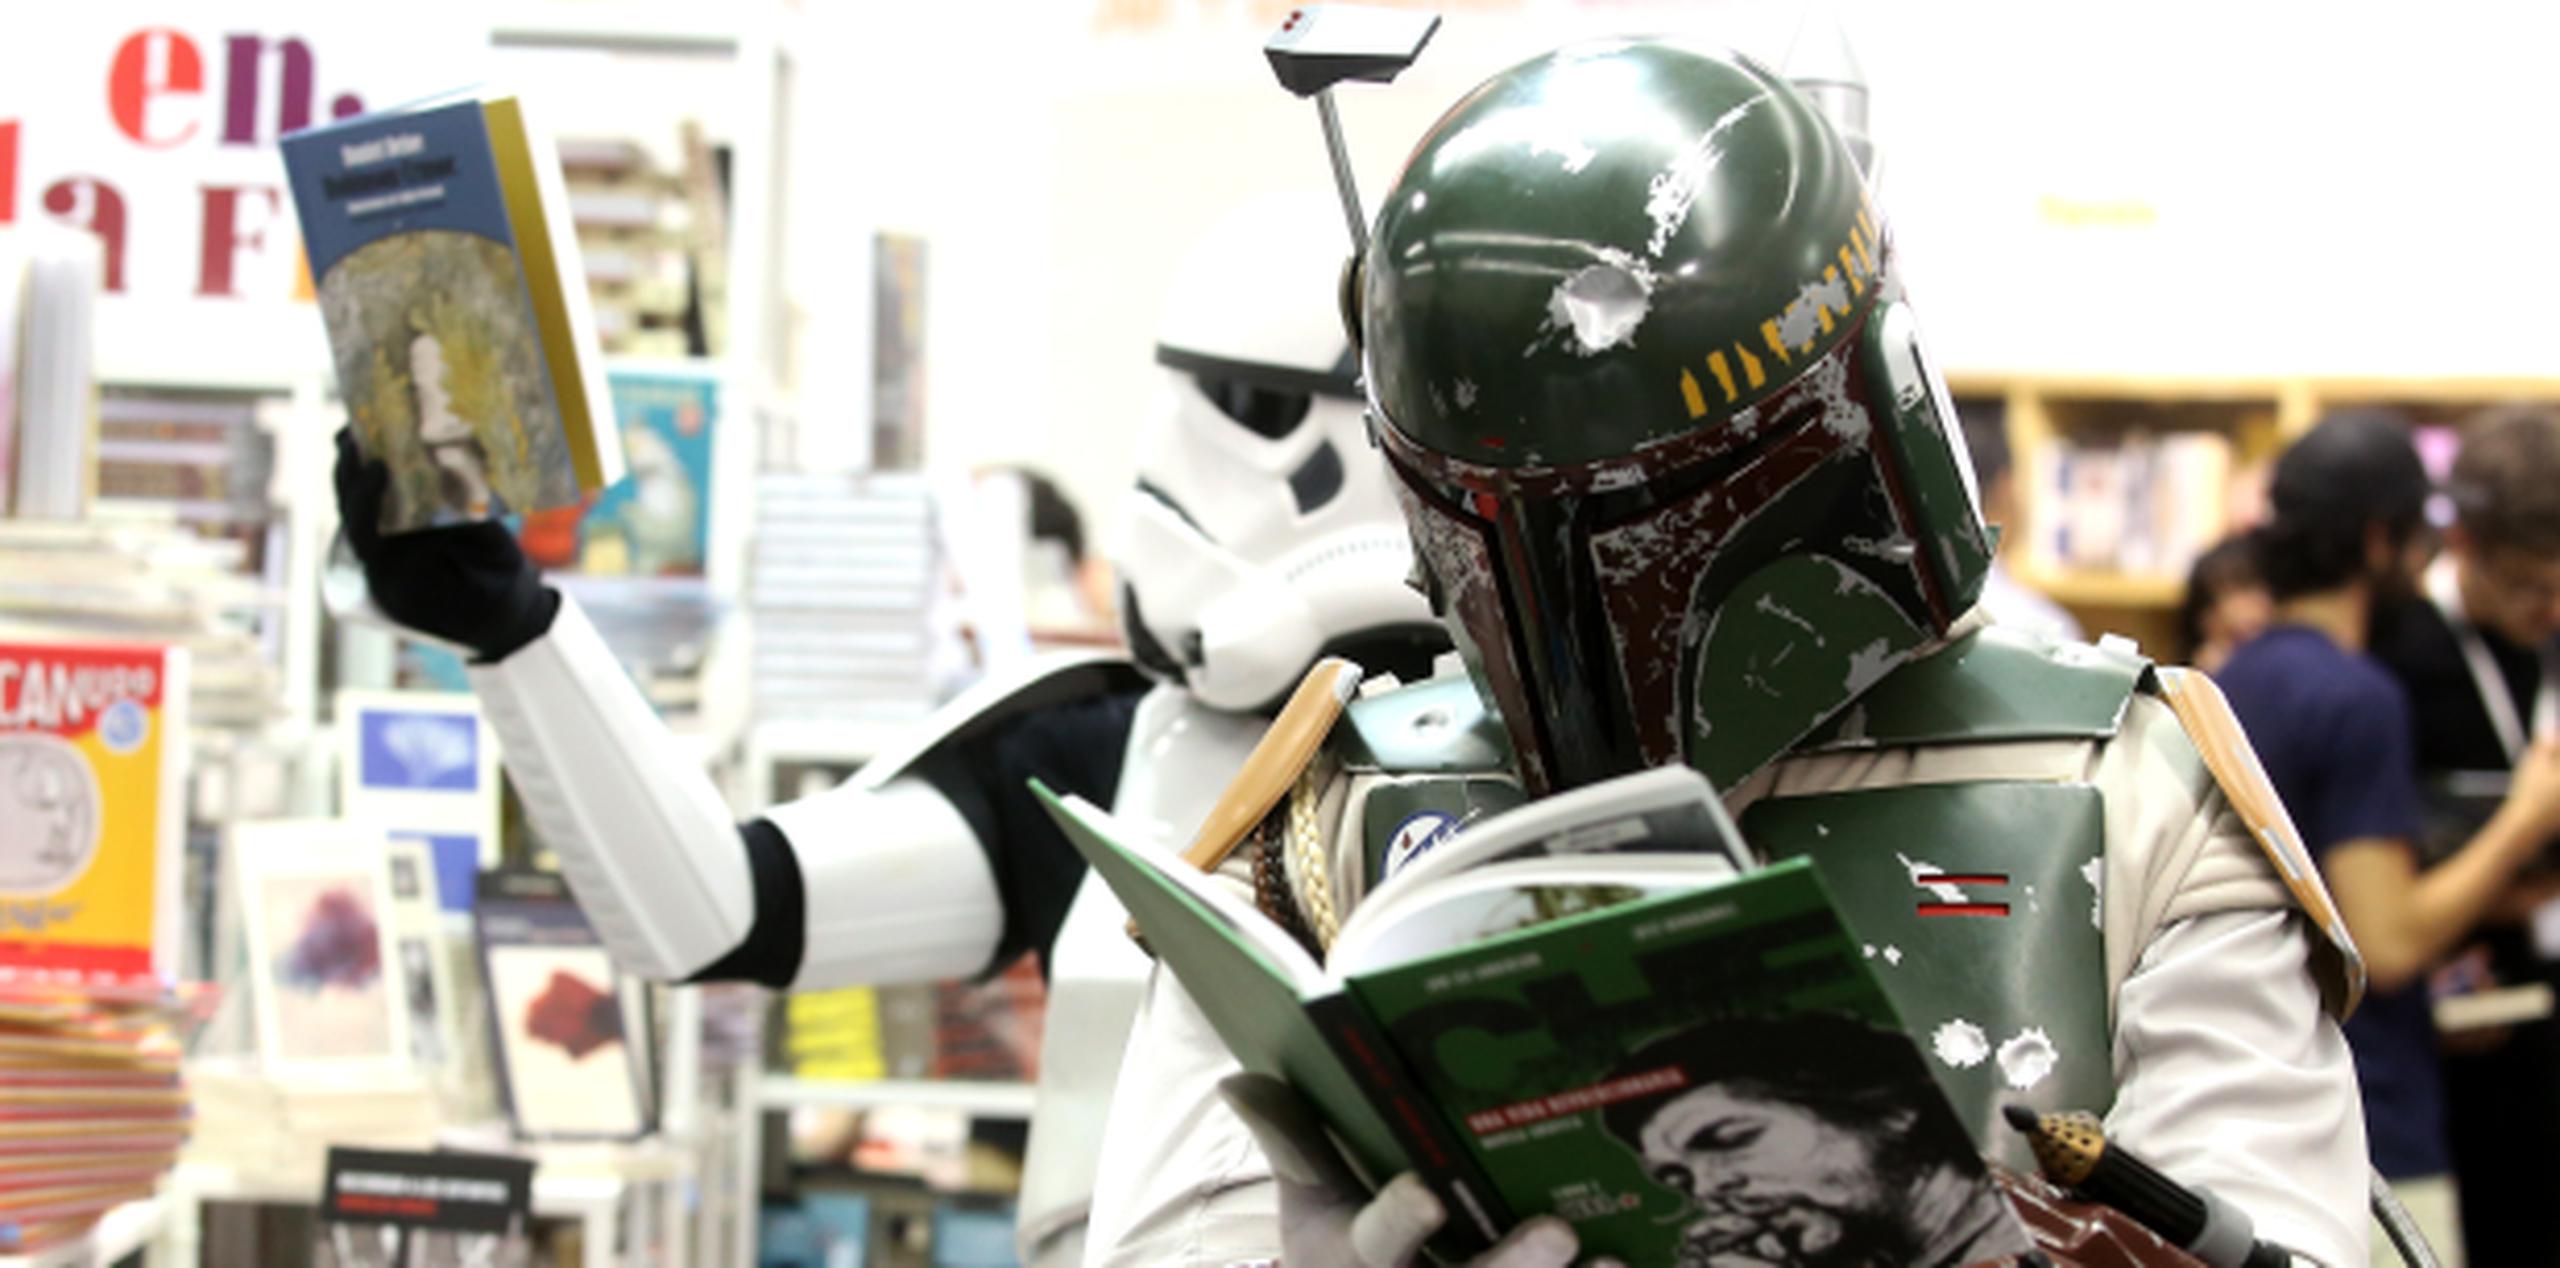 Hay múltiples eventos en el mundo aprovechando el entusiasmo de Star Wars. Aquí la Feria del Libro de Guadalajara, México, permitieron al público entrar gratis si llegaban vestidos como personajes de la cinta, como aquí un Boba Fett y un Stormtrooper. (EFE)